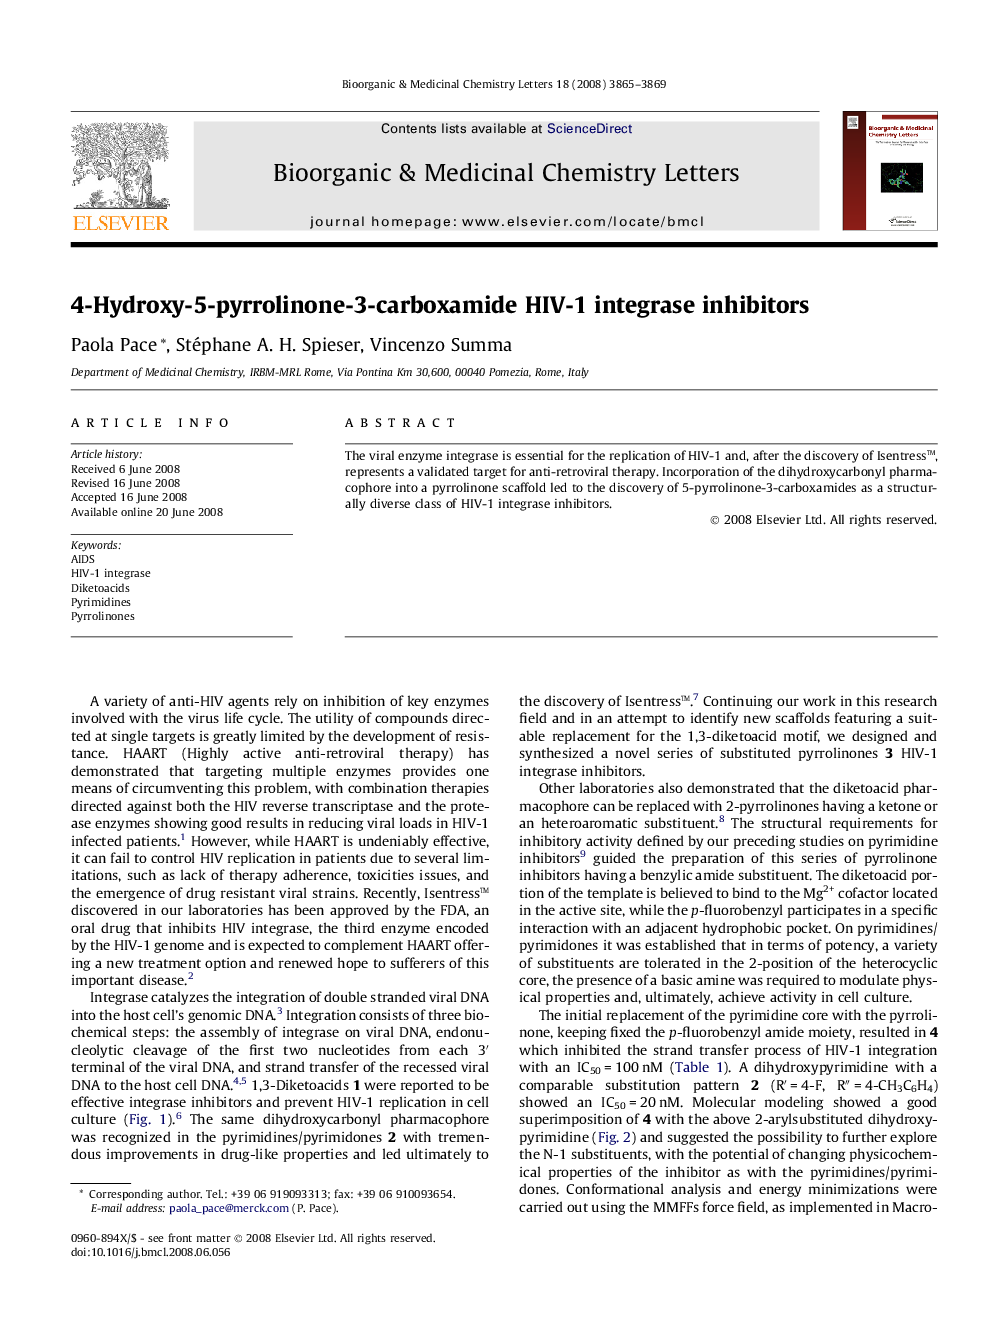 4-Hydroxy-5-pyrrolinone-3-carboxamide HIV-1 integrase inhibitors